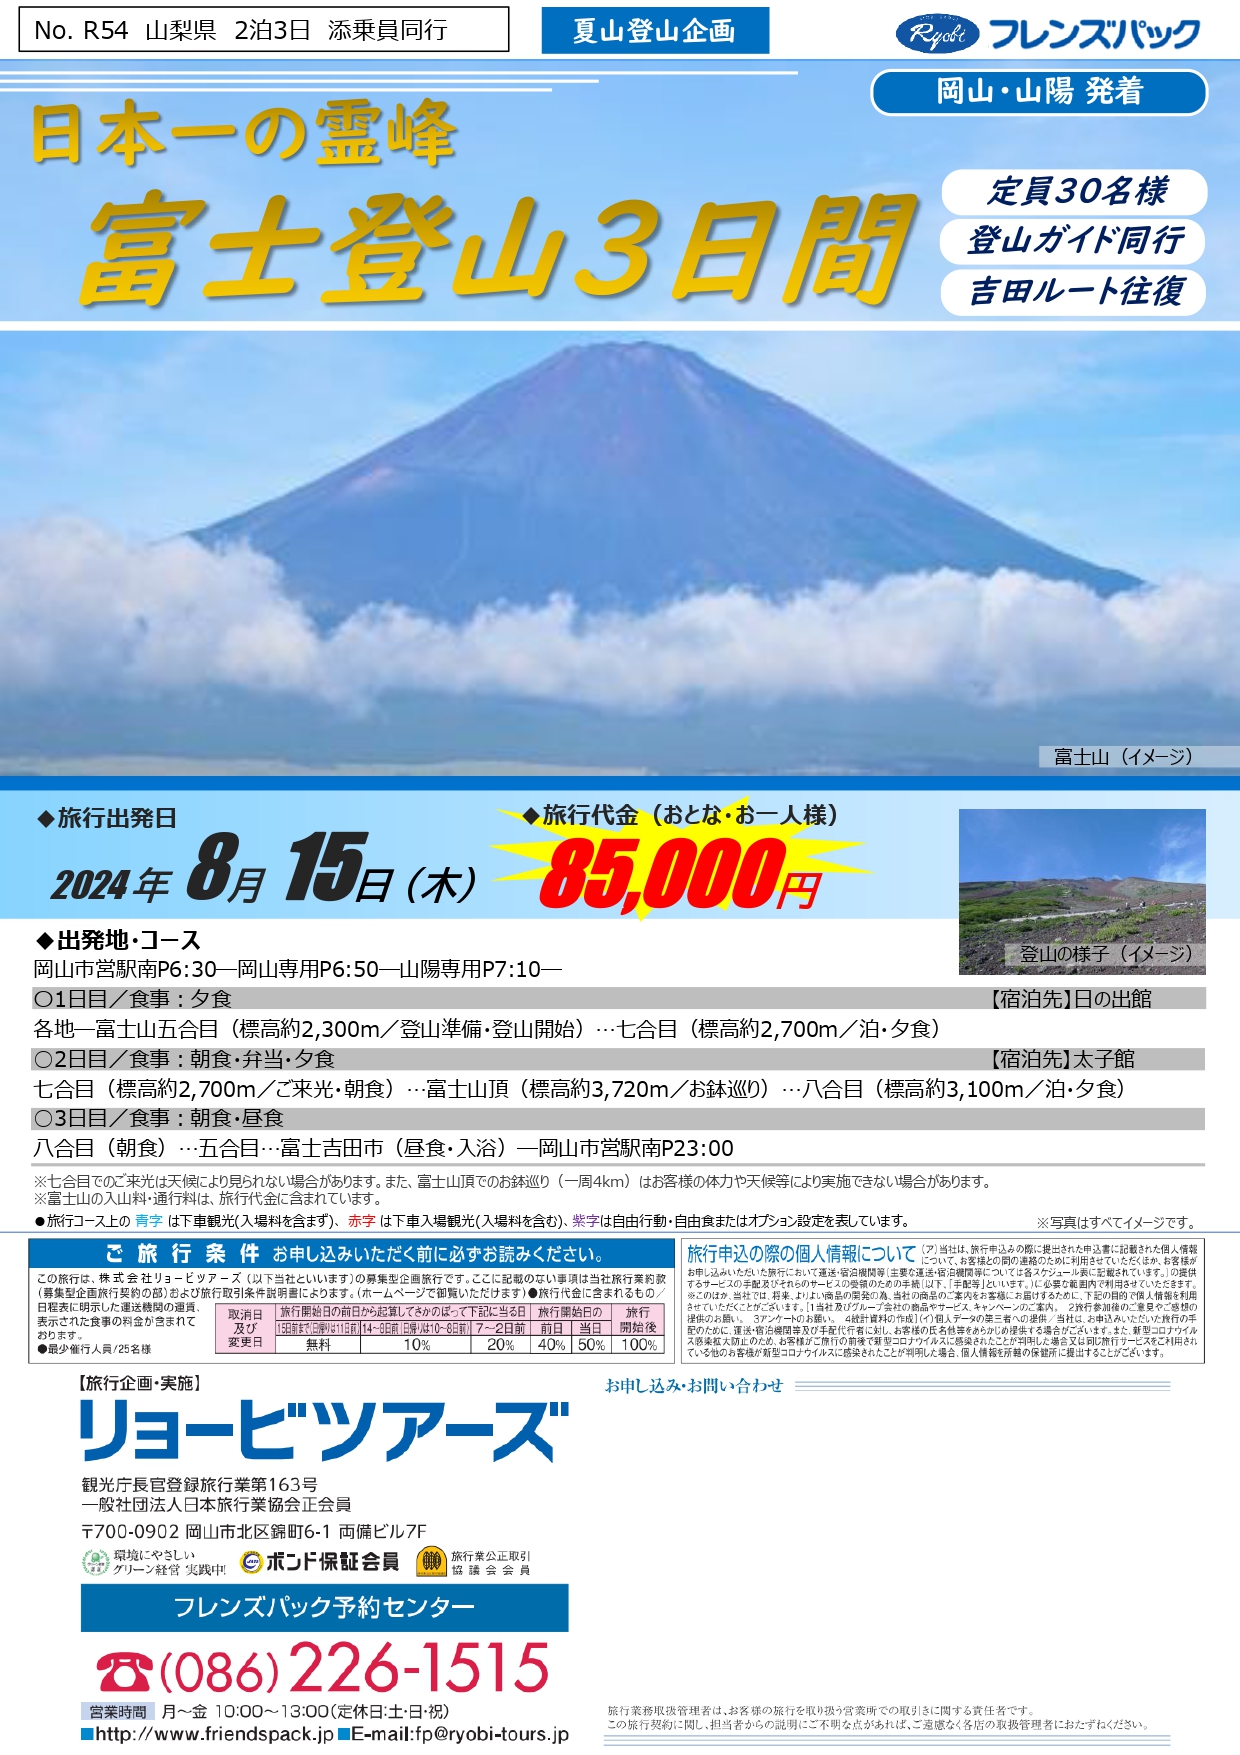 富士登山3日間